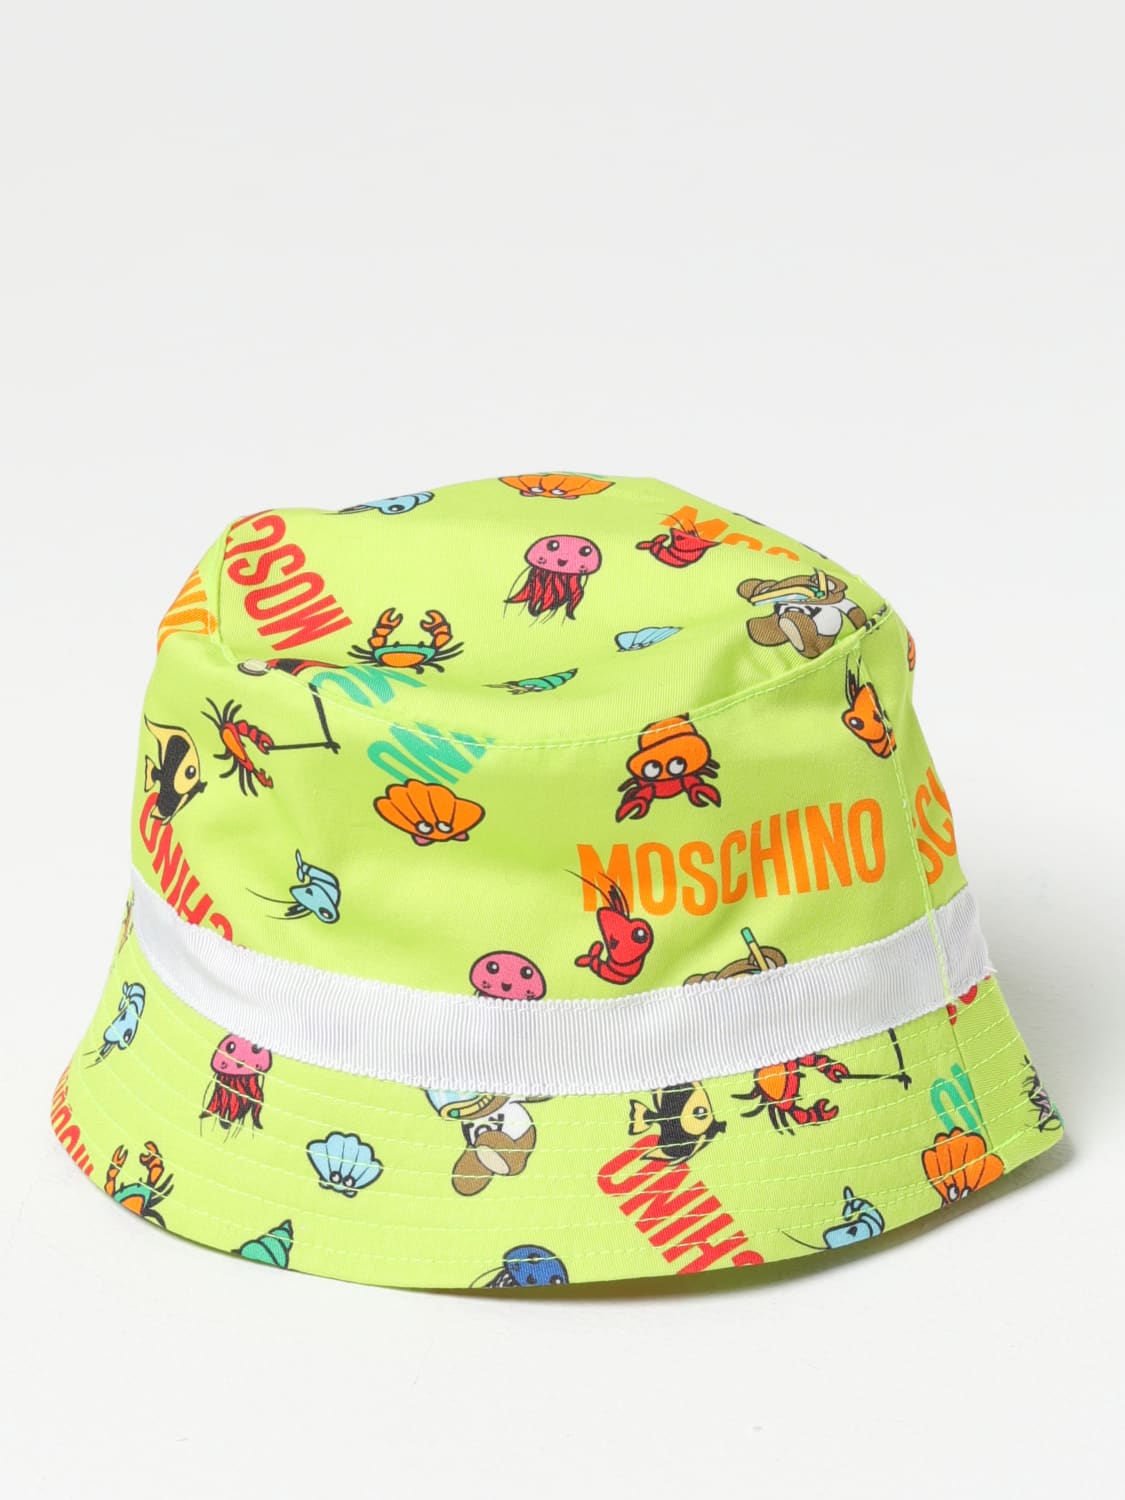 MOSCHINO BABY：帽子儿童- 青柠绿| MOSCHINO BABY 帽子MUX04QLOB17